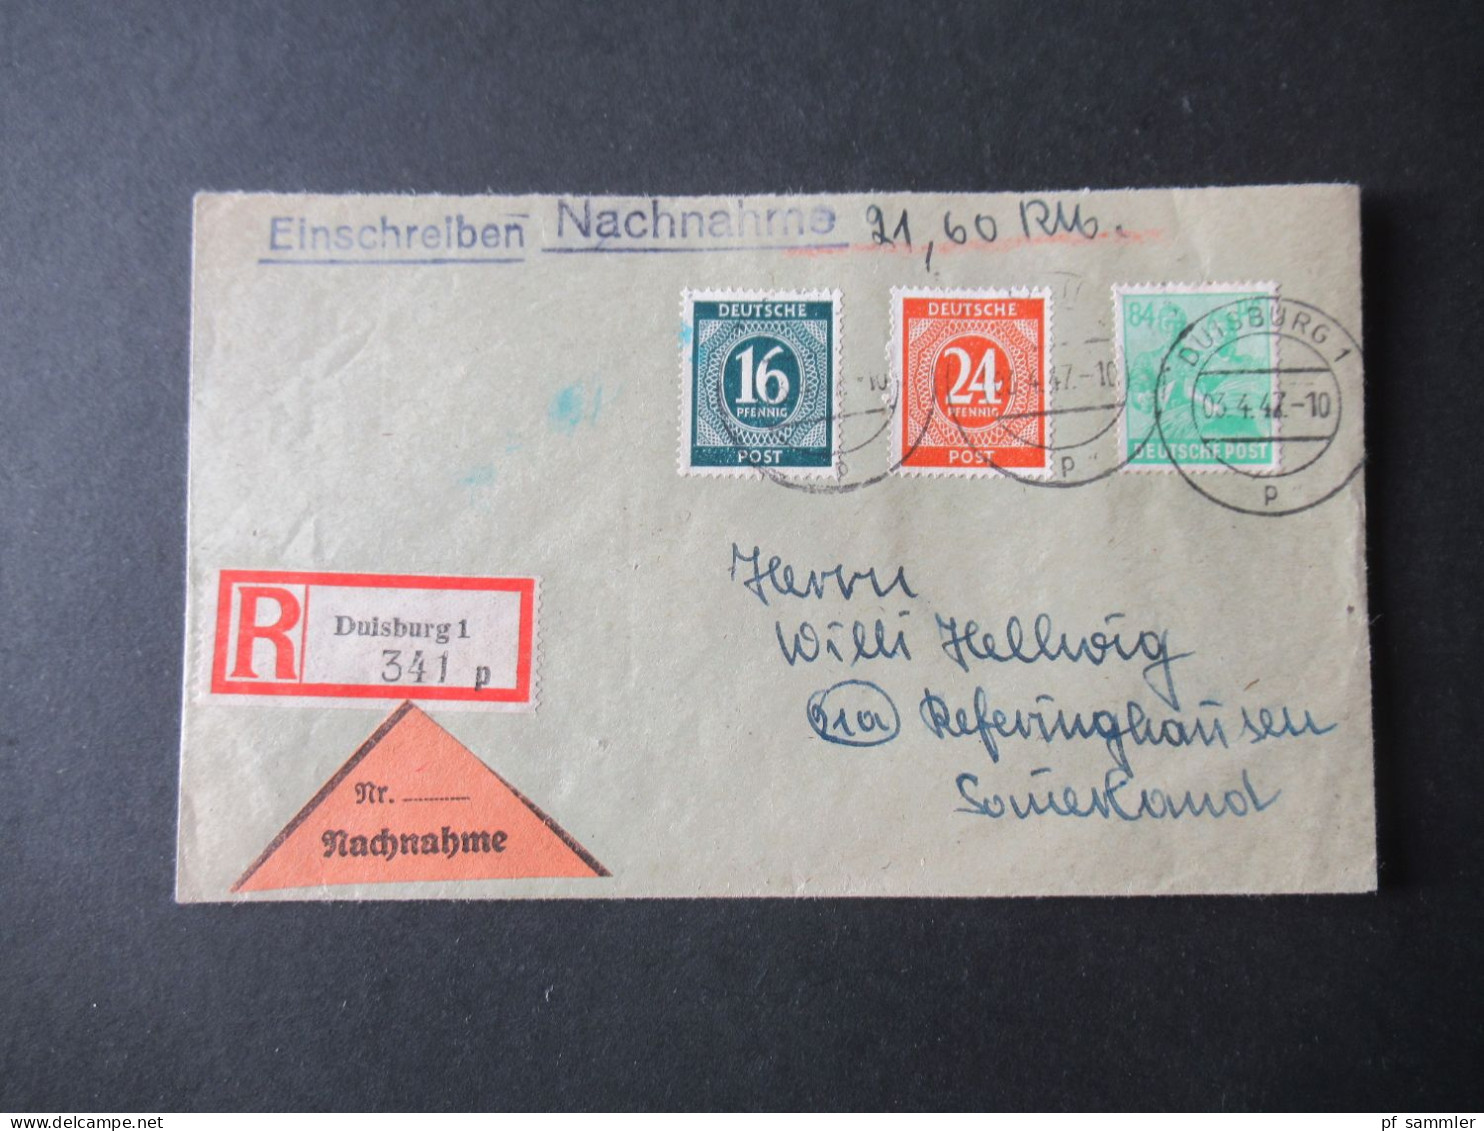 Kontrollrat 03.4.1947 Einschreiben Nachnahme Duisburg 1 Nach Referinghausen Sauerland - Covers & Documents